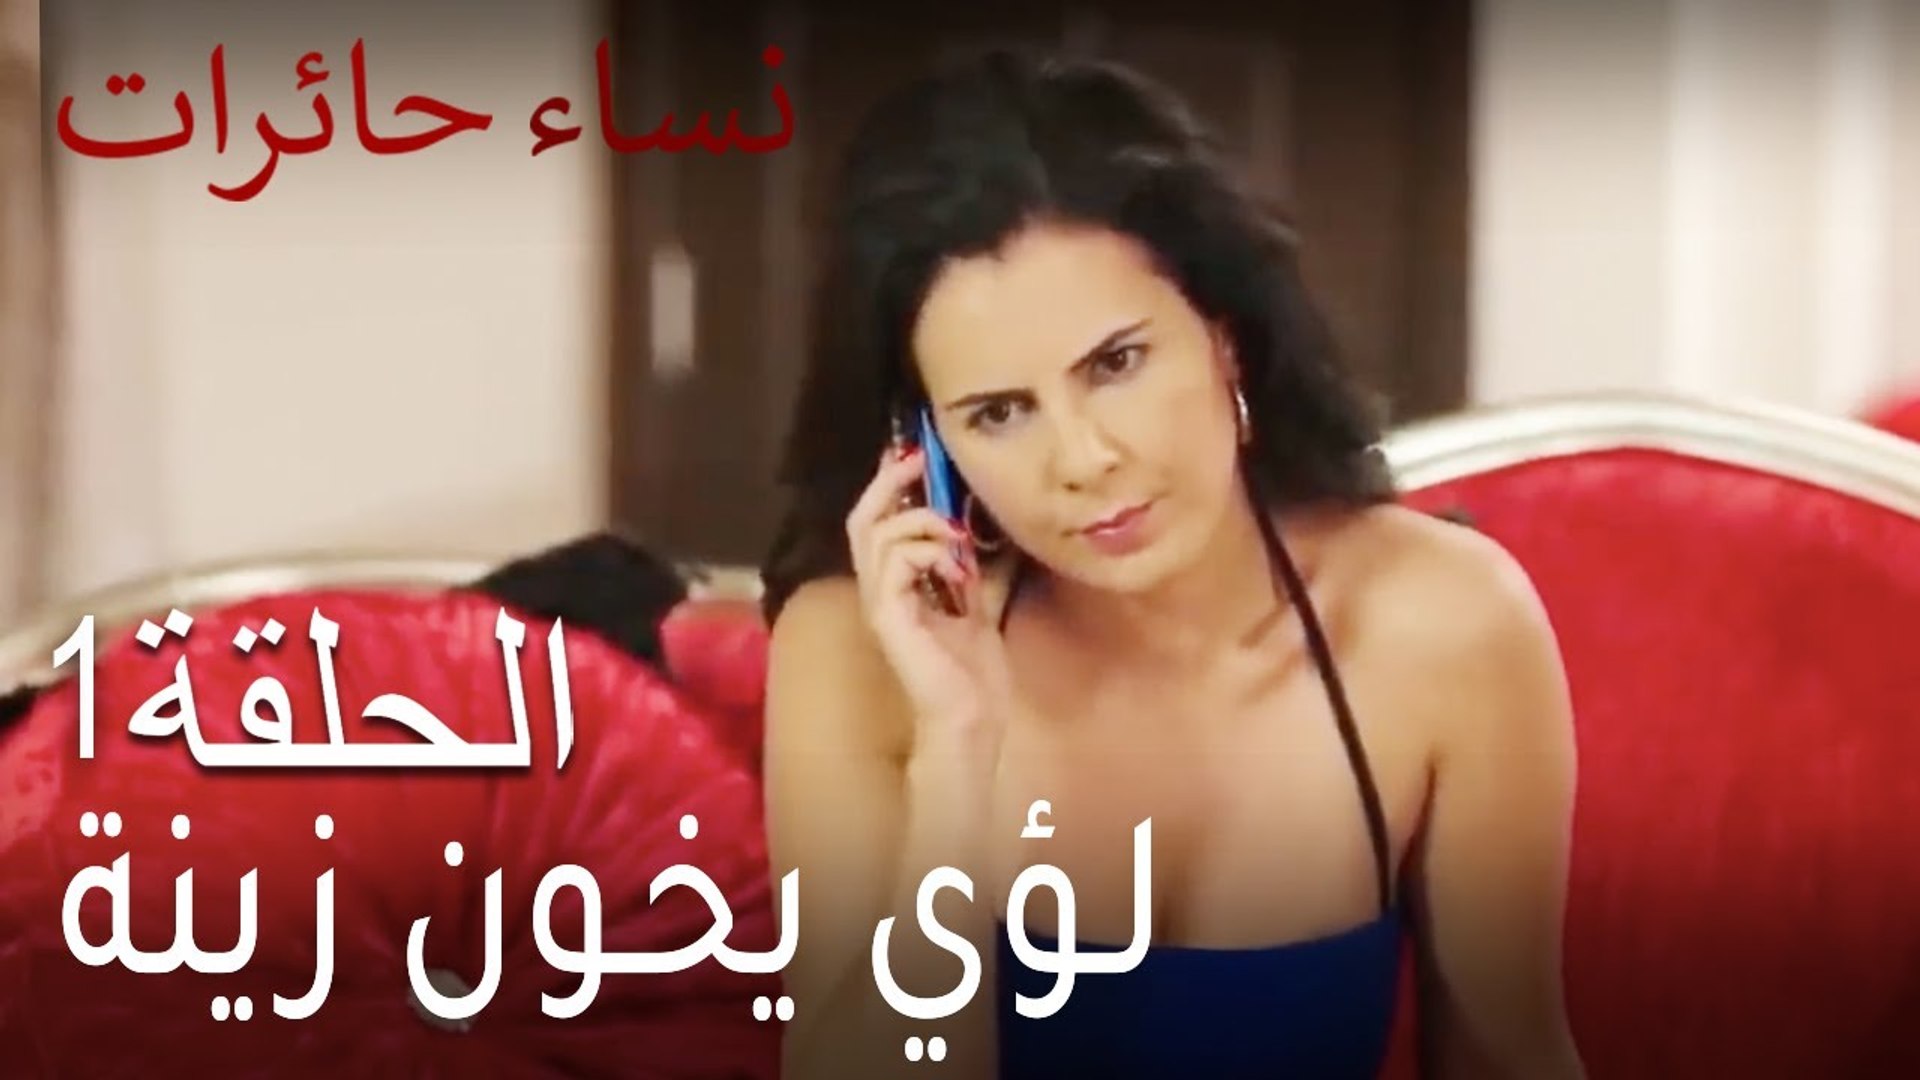 نساء حائر1 Nisa Hairat - لؤي يخون زينة - فيديو Dailymotion